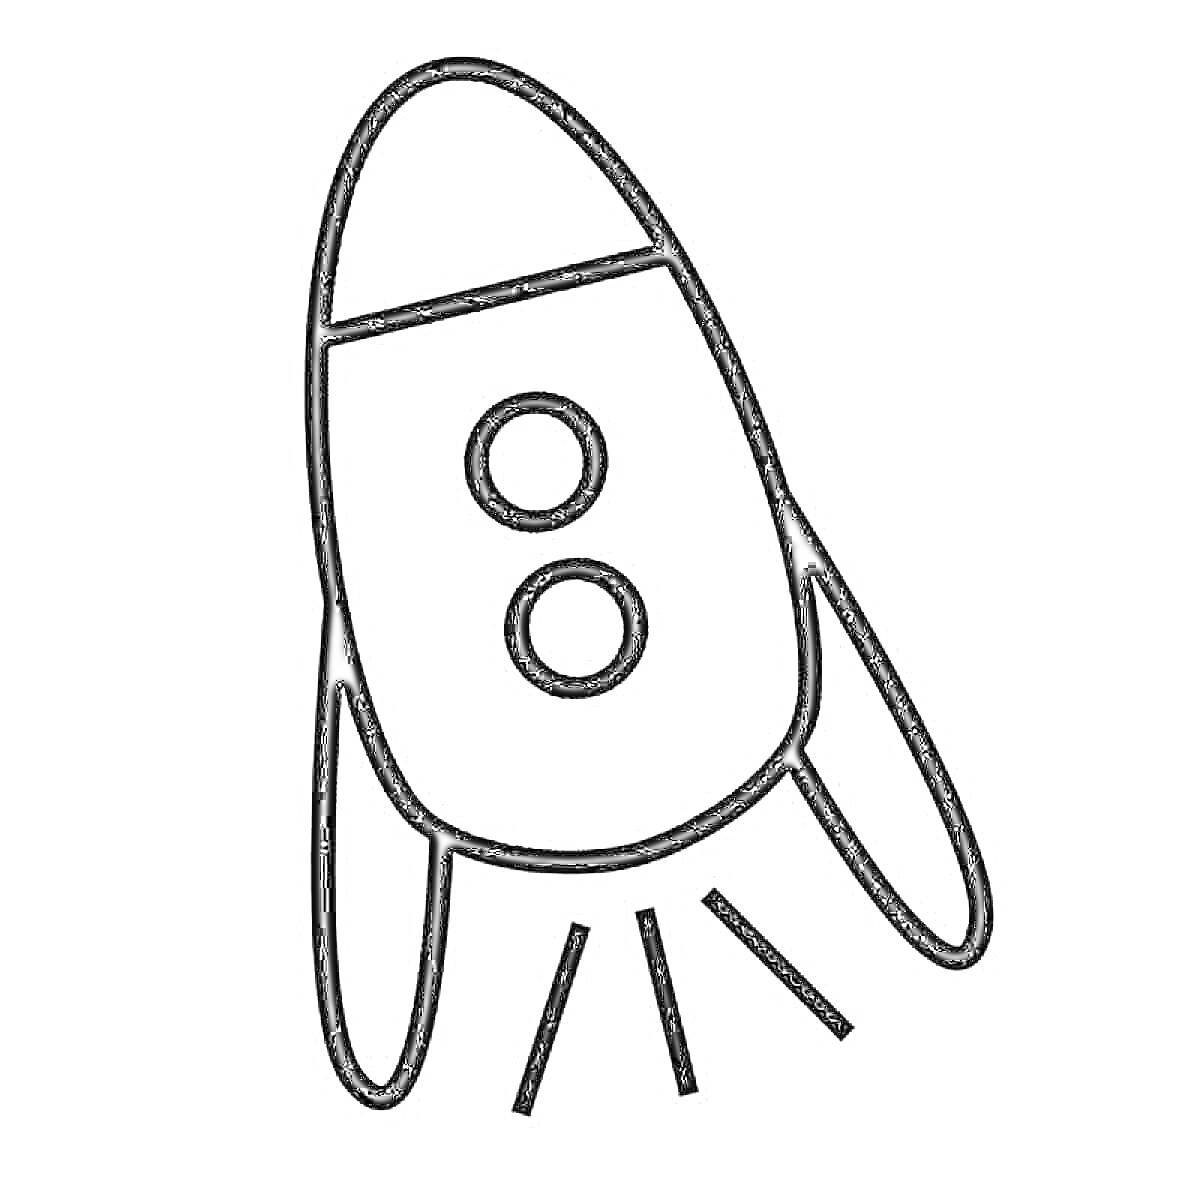 Раскраска Ракета с двумя круглыми иллюминаторами и хвостовыми стабилизаторами на взлете